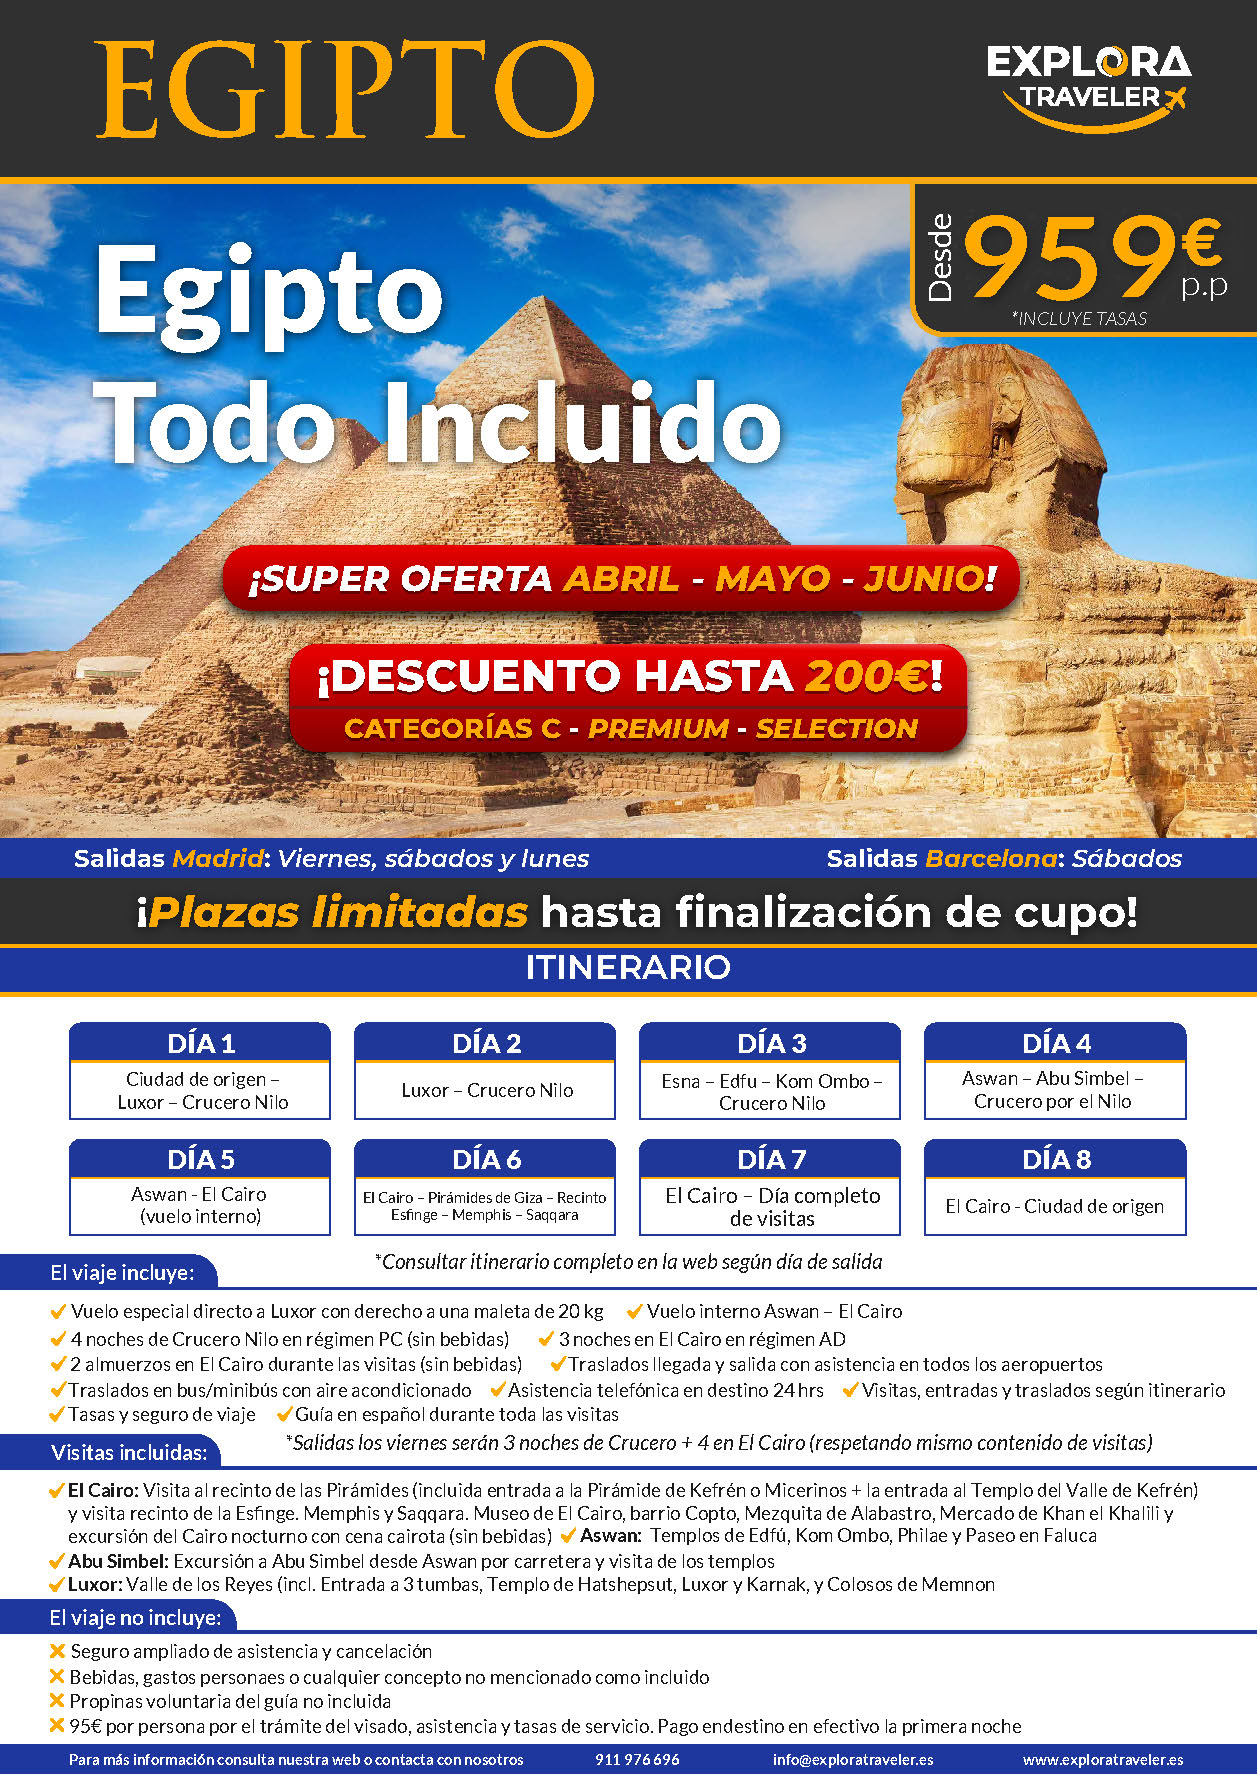 Oferta Explora Traveler Egipto Charter Todo Incluido 8 dias salidas abril mayo junio 2024 vuelo directo desde Madrid y Barcelona